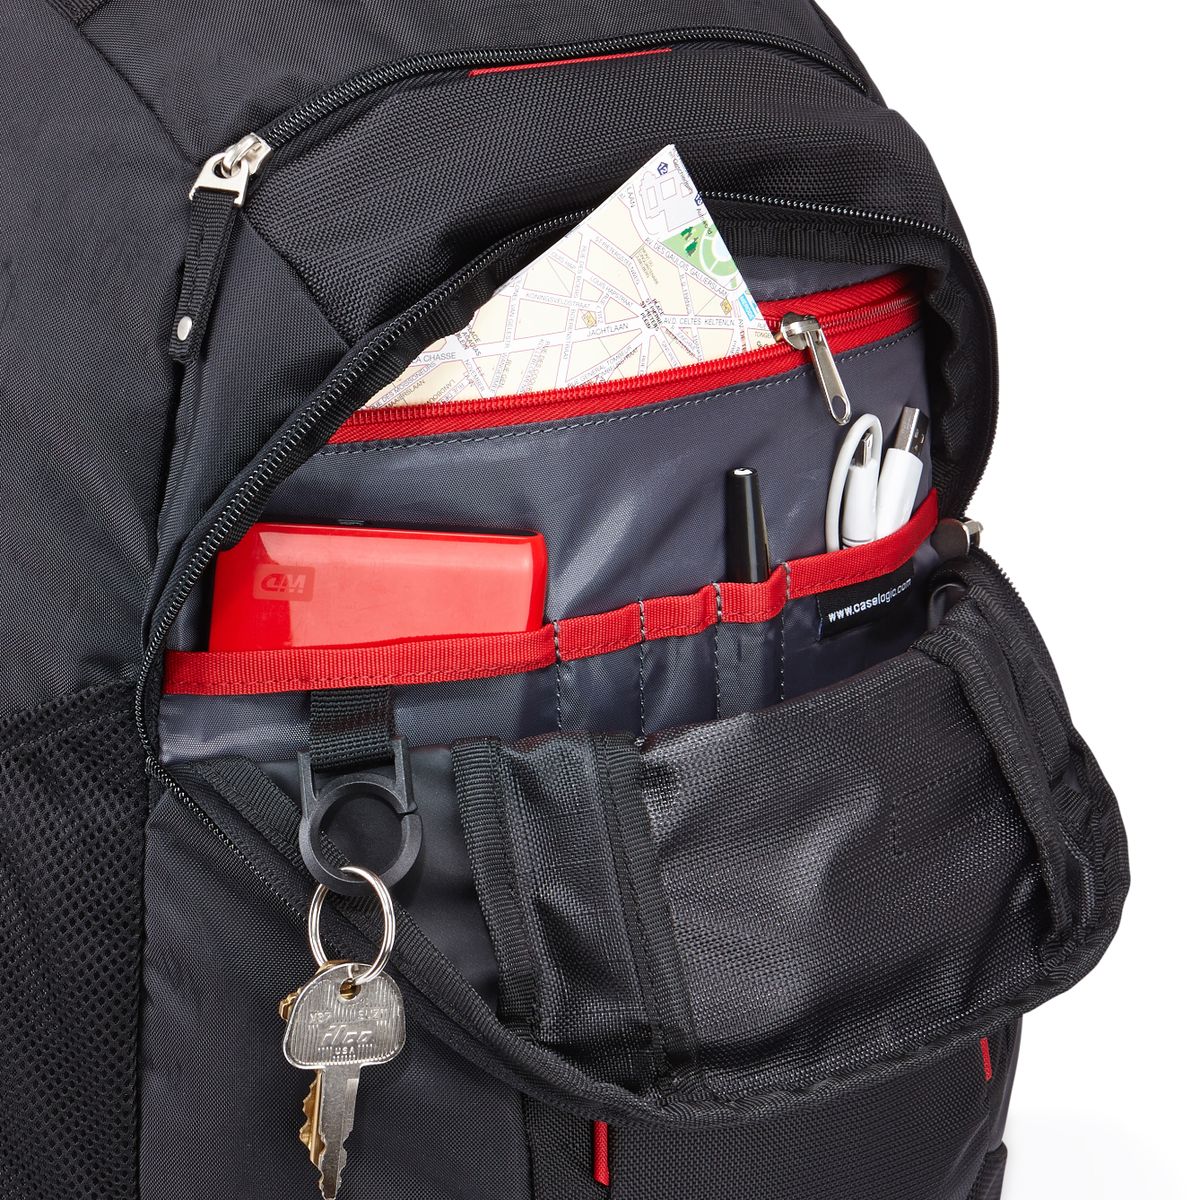 Case Logic Evolution Backpack laptop backpack